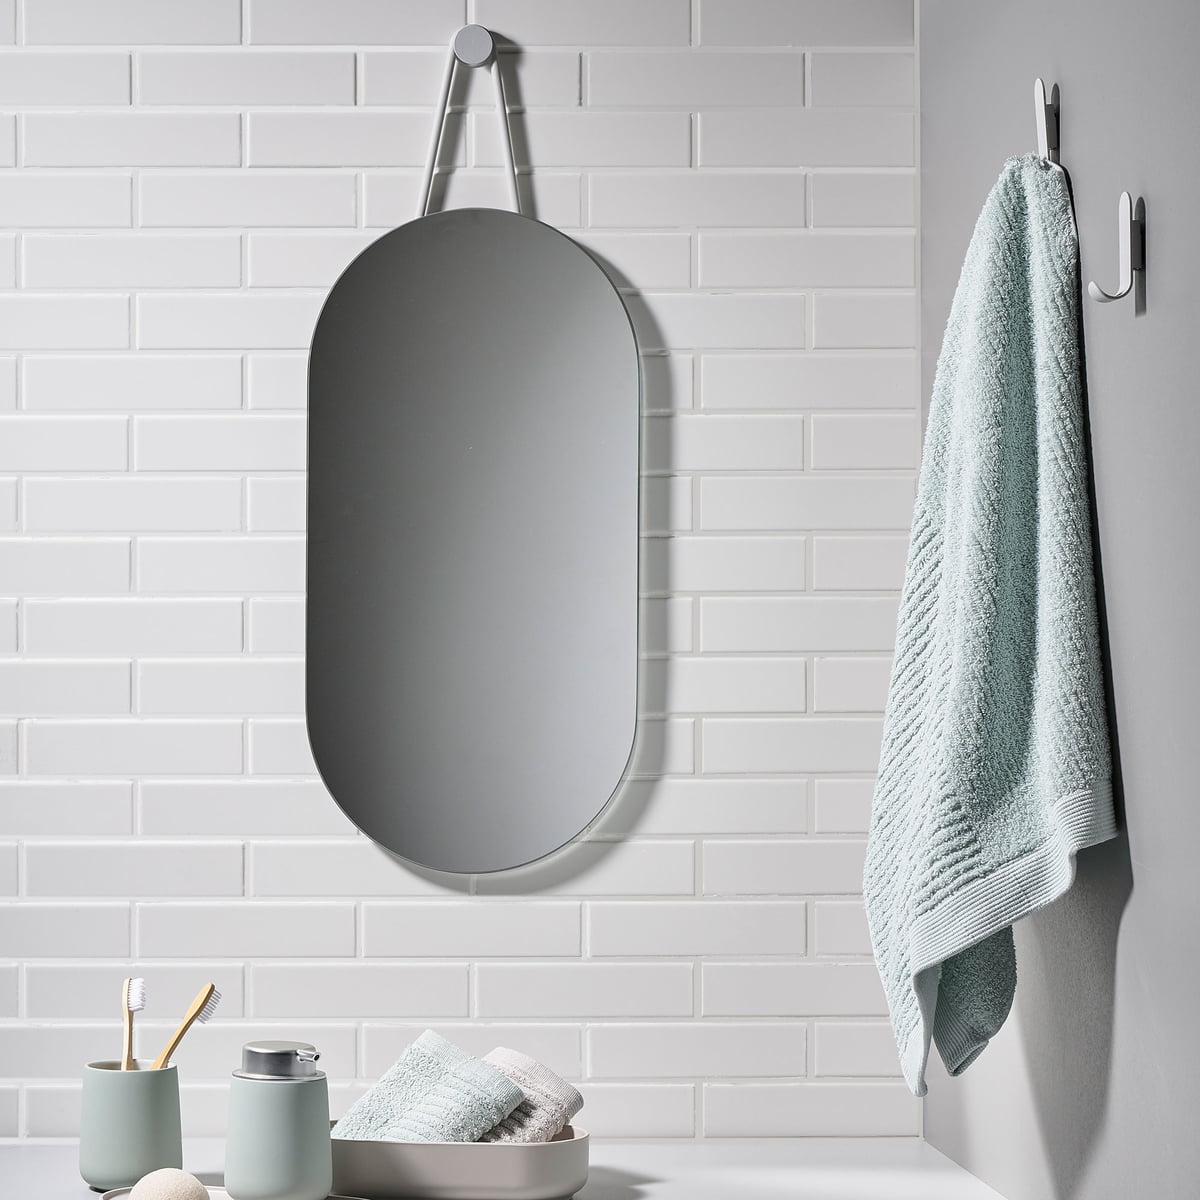 Zone Denmark A Series Wall Mirrors, Bathroom Mirror 30 X 60